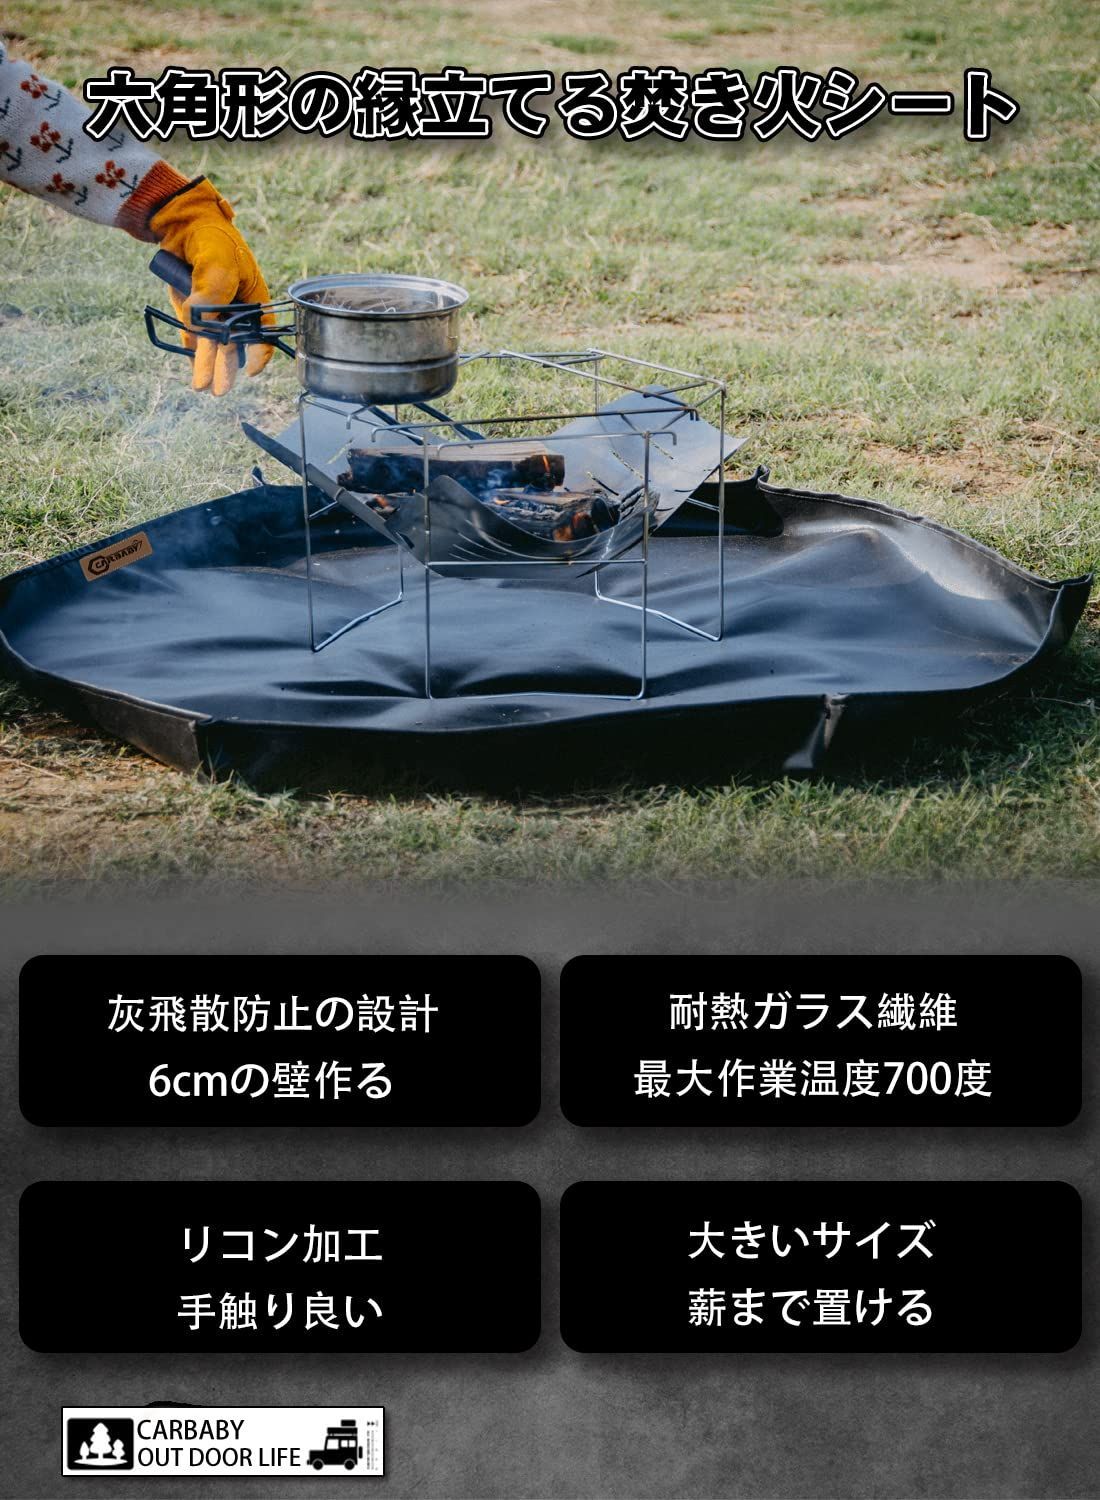 色:ブラック105×105cm焚き火シート 耐火 耐熱 防炎 溶接 ガラス繊